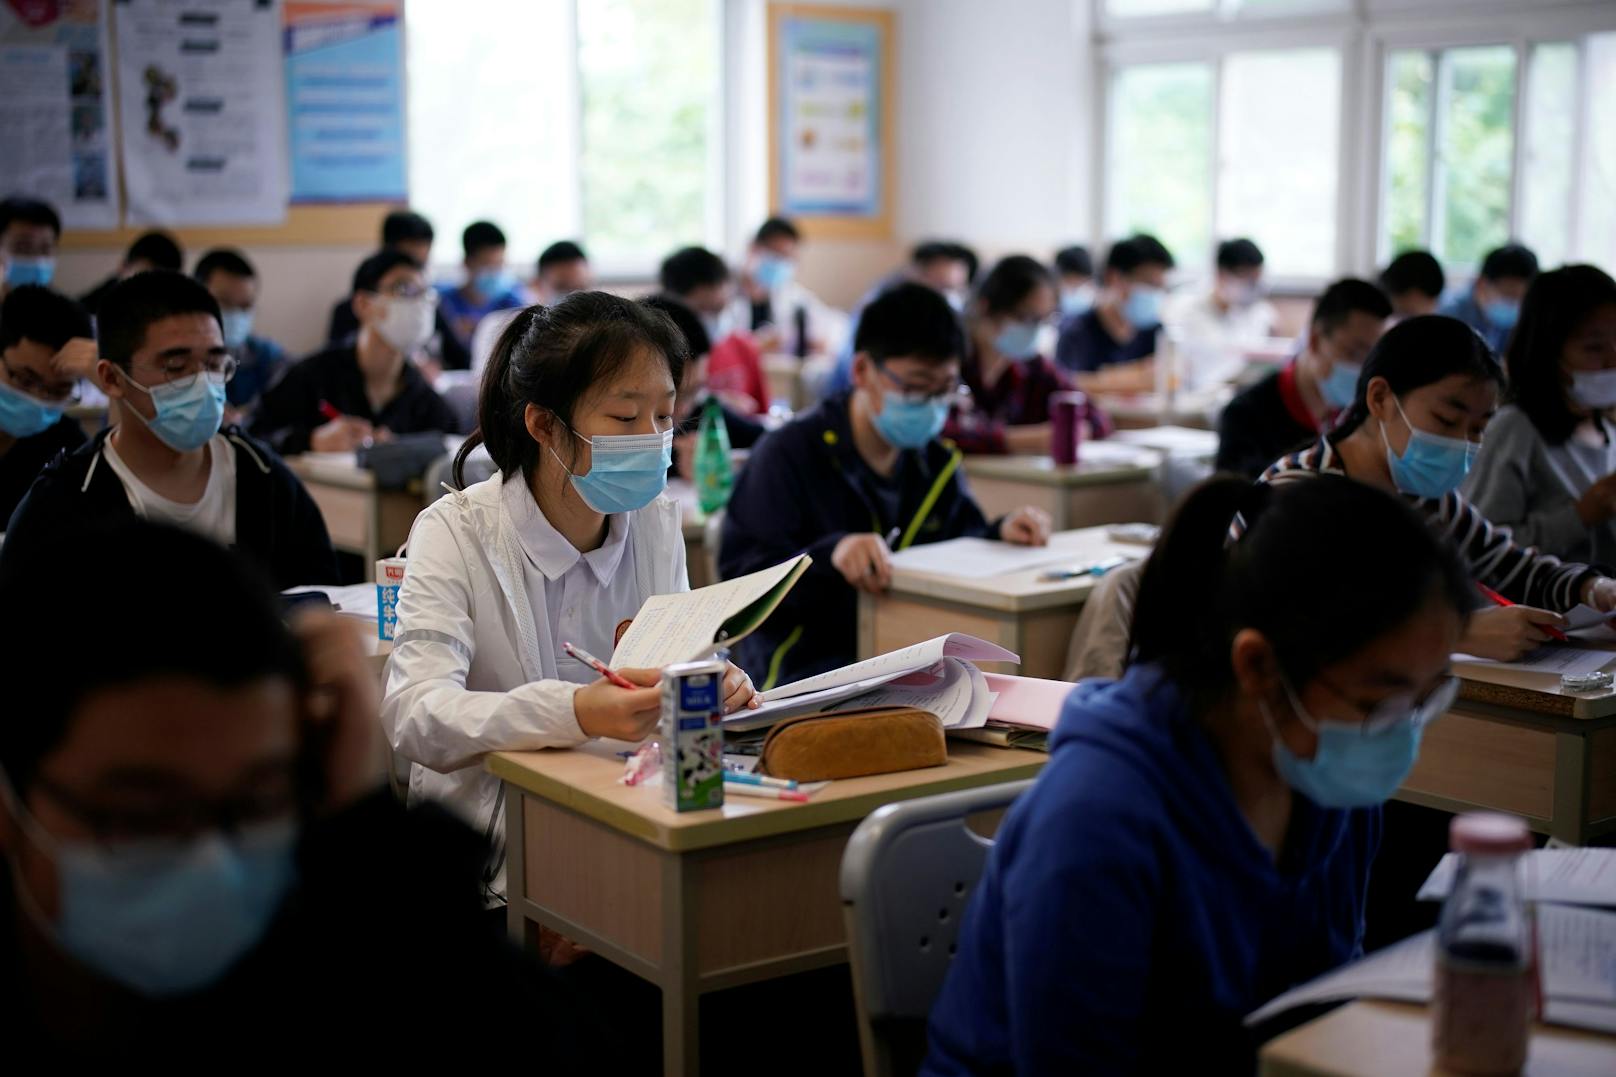 Corona in Shanghai: Die Schülerinnen und Schüler der Oberstufe können wählen, ob sie weiter in die Schule gehen oder von zu Hause lernen wollen.